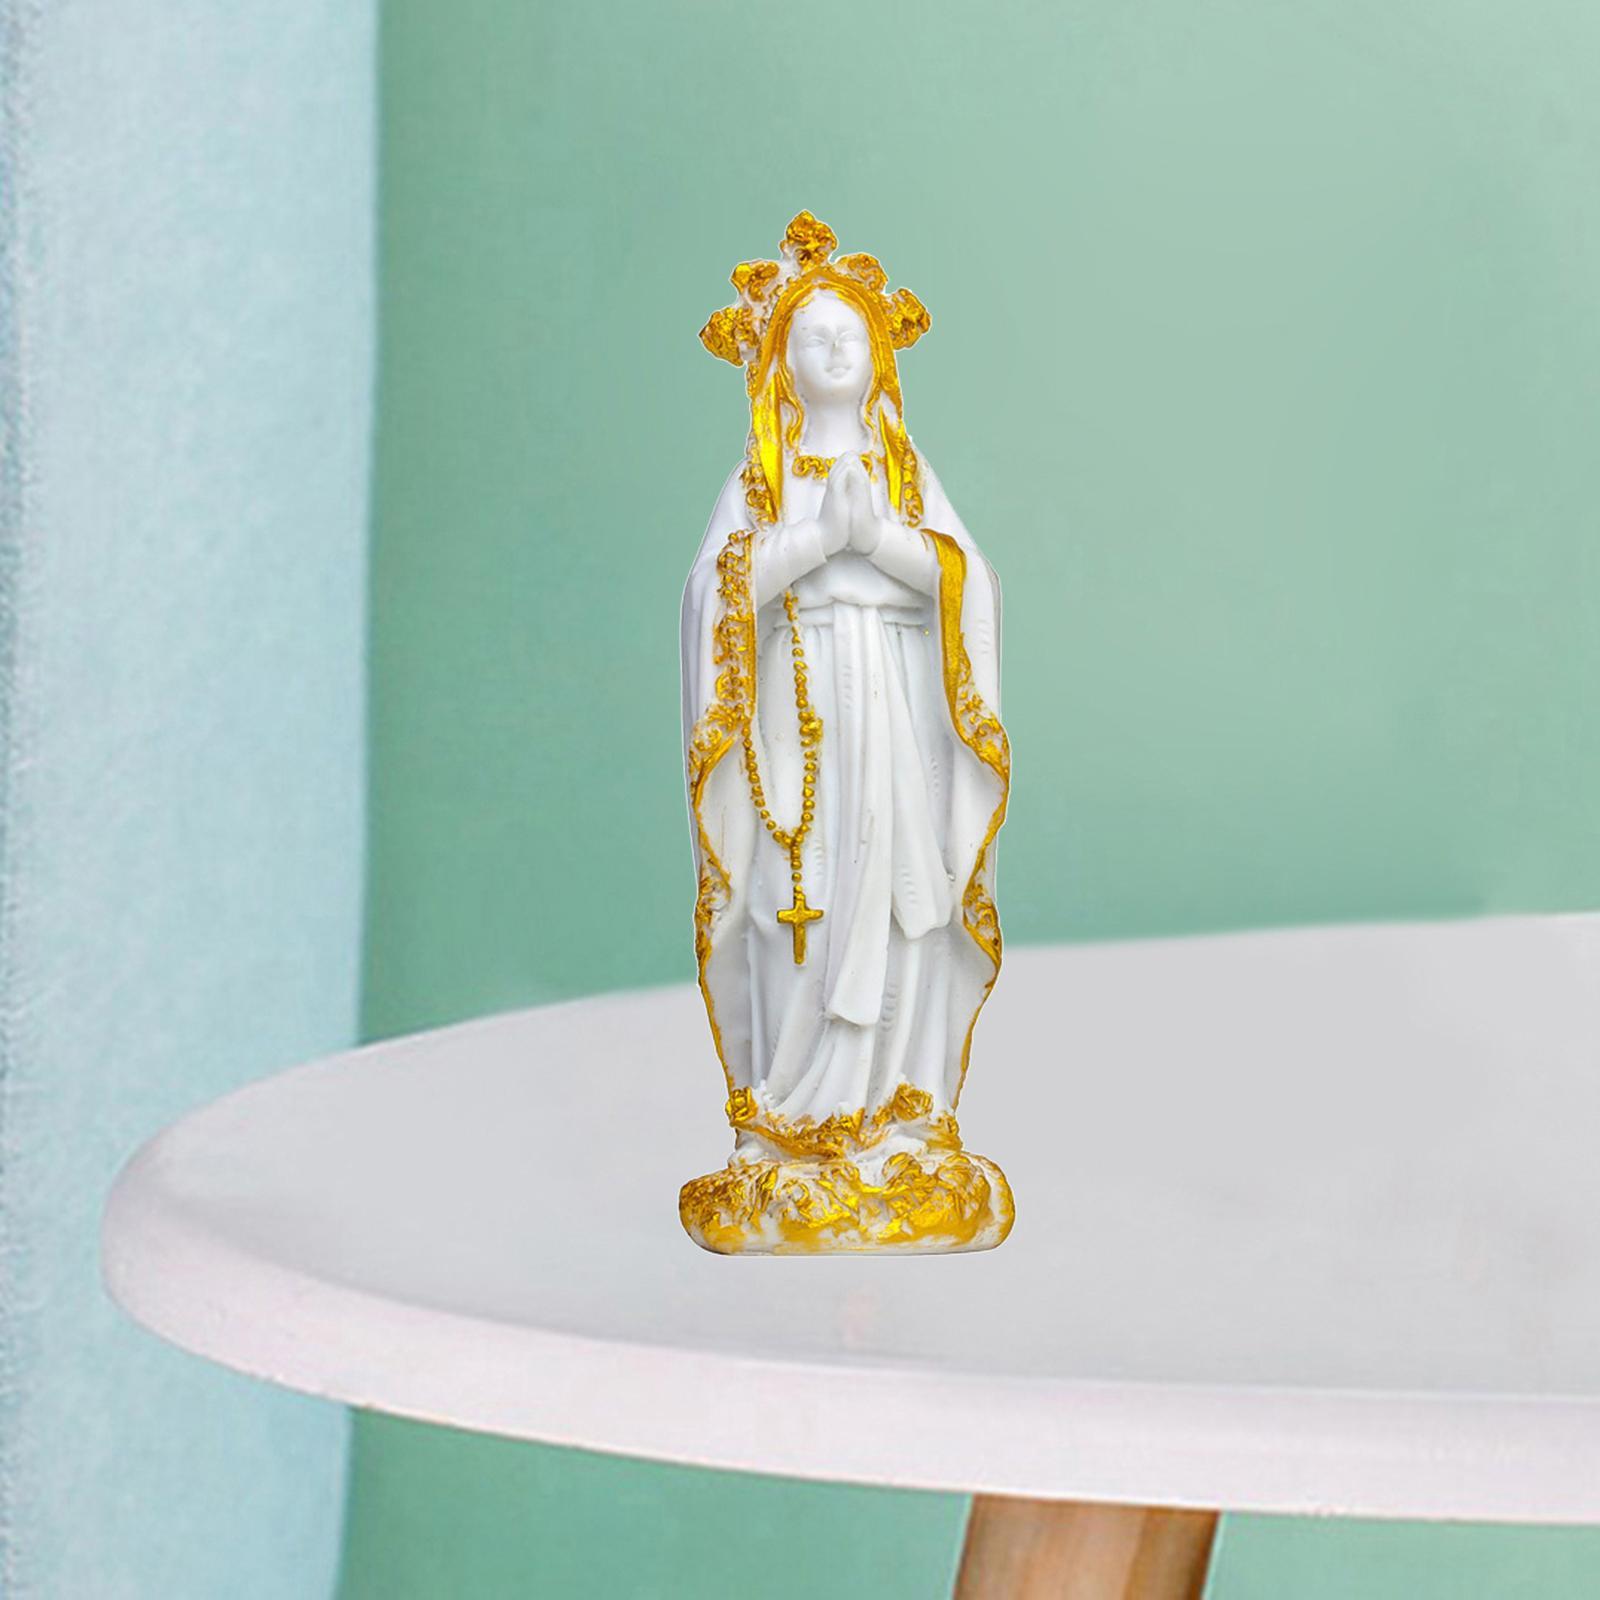 MagiDeal Jesus Series Figurine Statue Religious Decoration Catholic Figurine